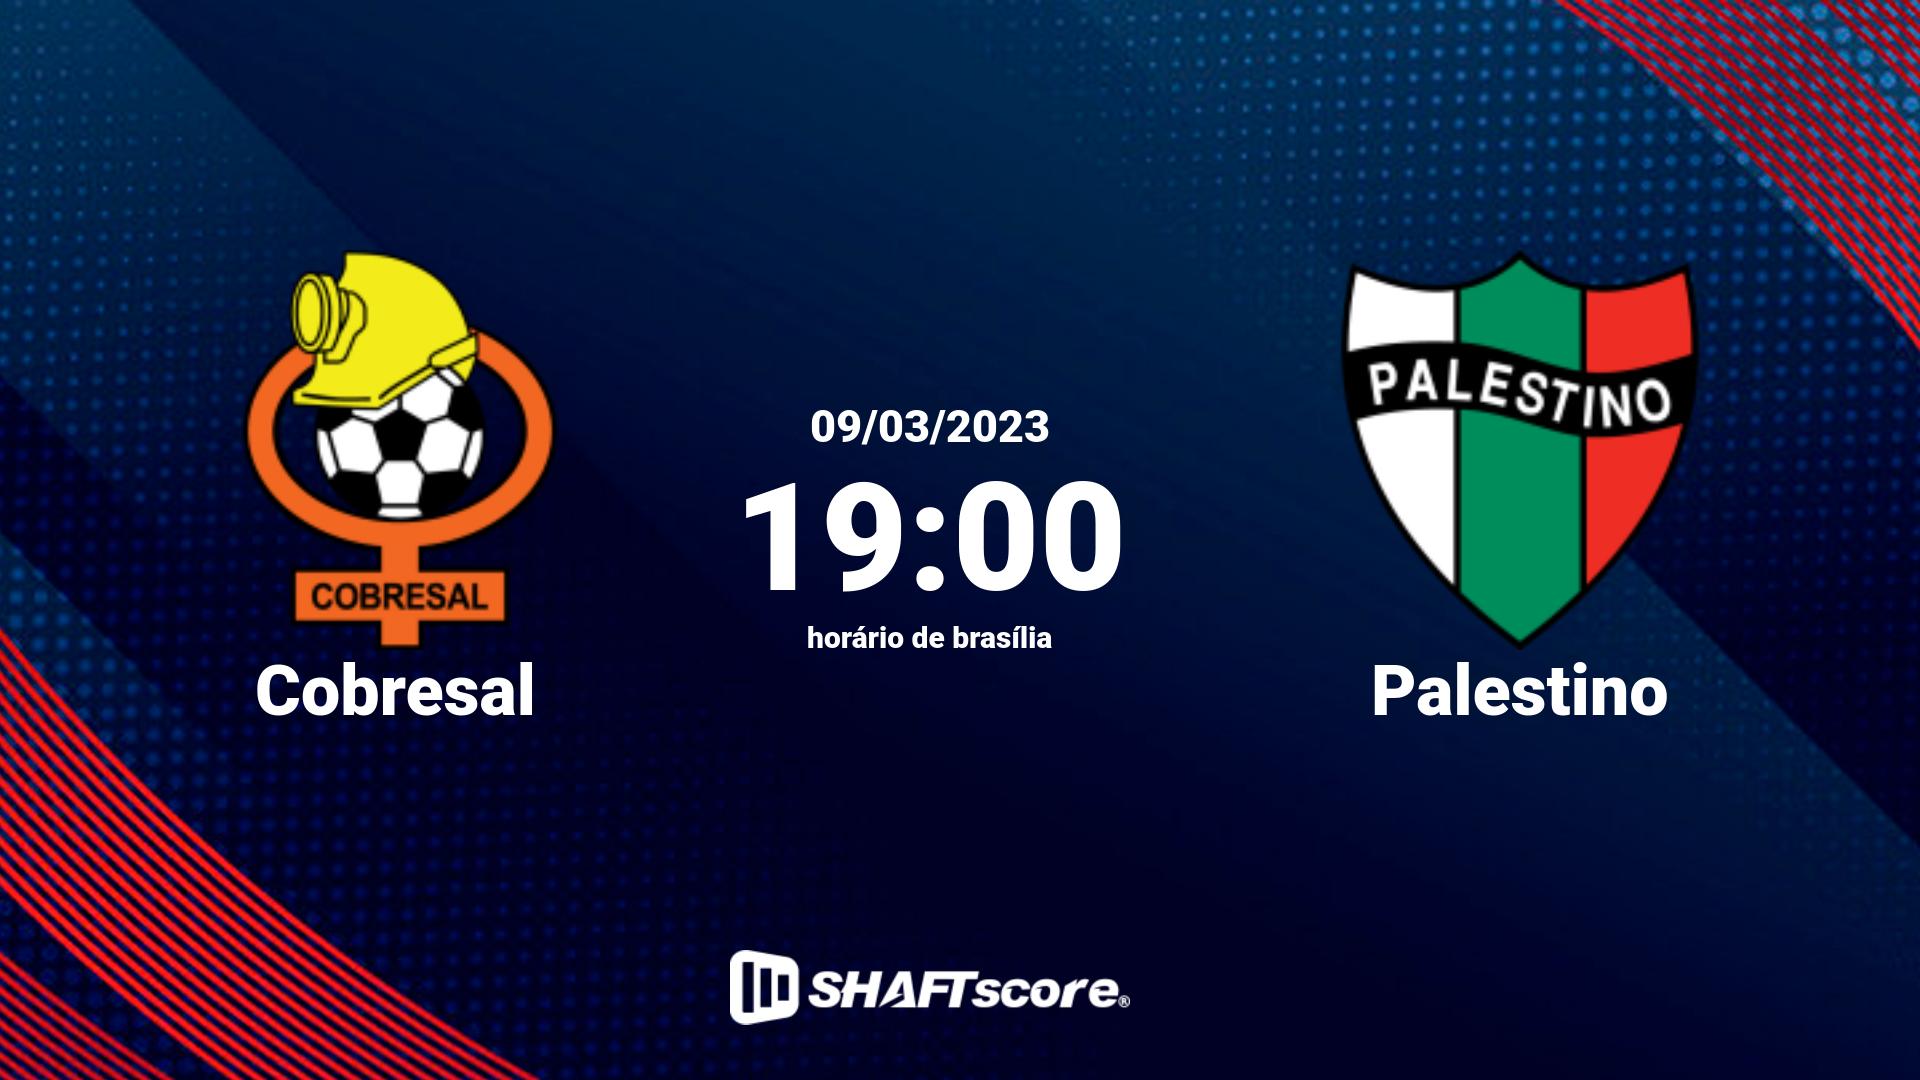 Estatísticas do jogo Cobresal vs Palestino 09.03 19:00